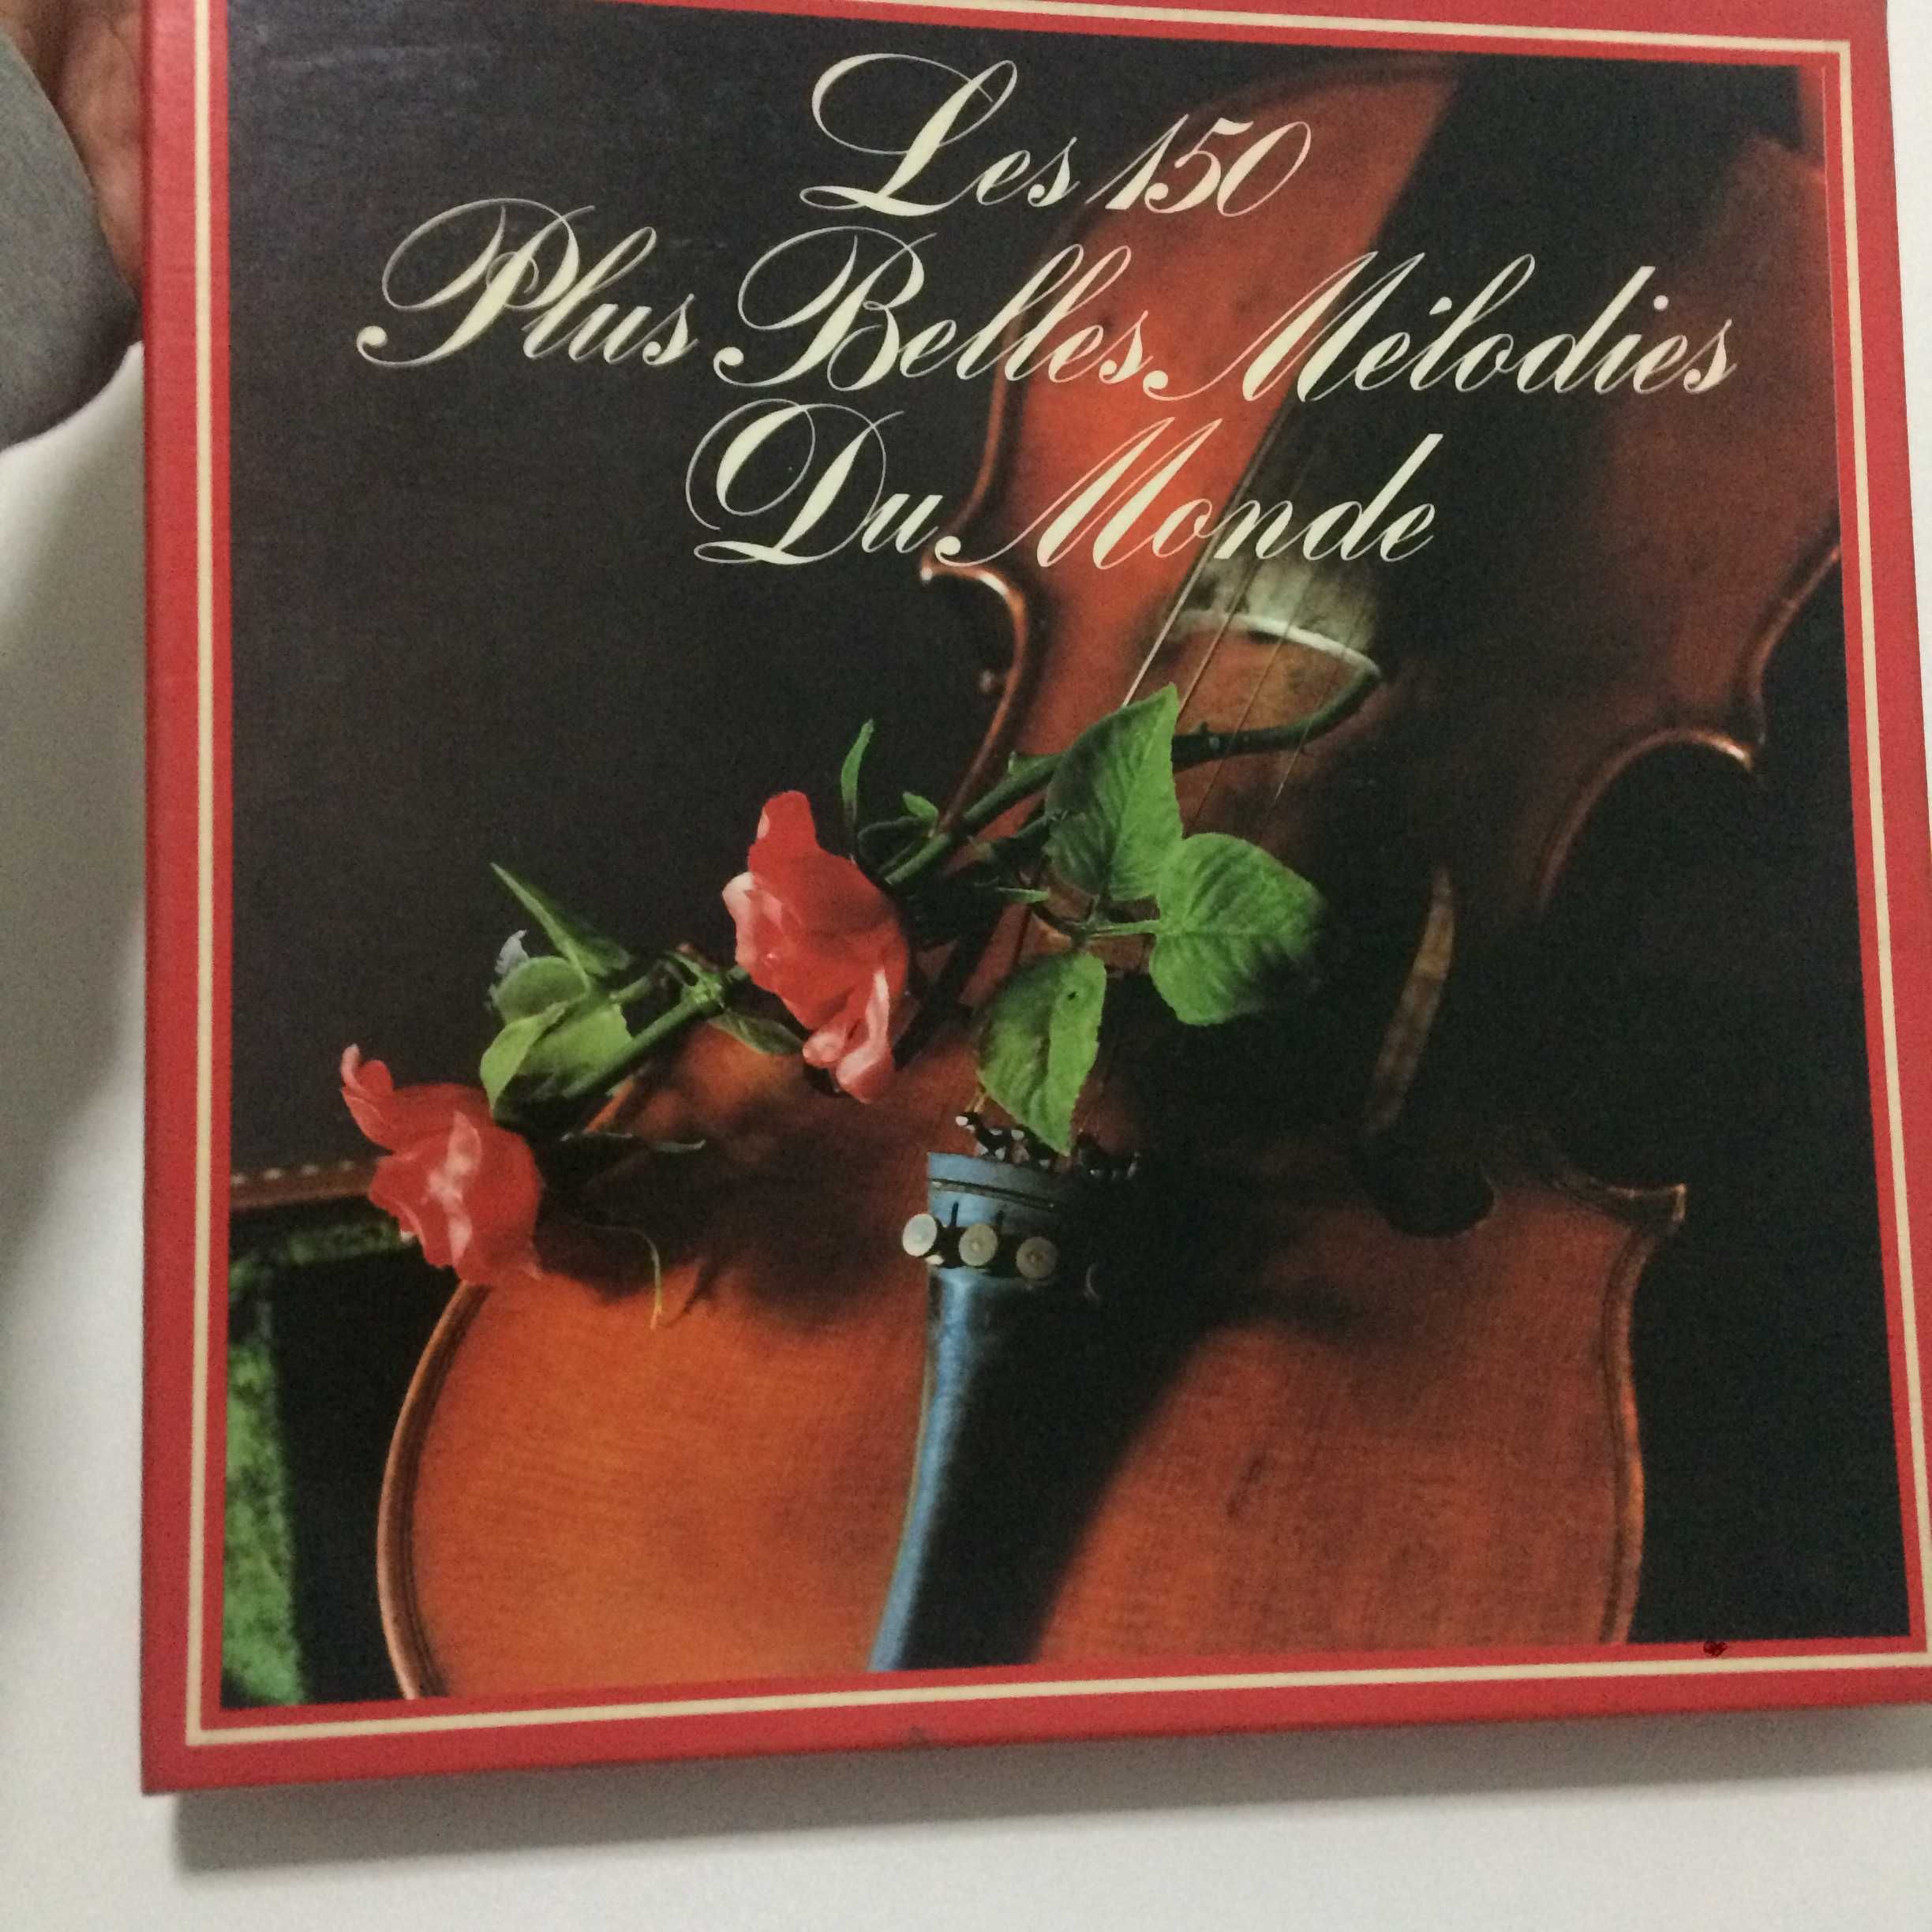 Les 150 Plus Belles Mélodies Du Monde - coletânea de discos vinil